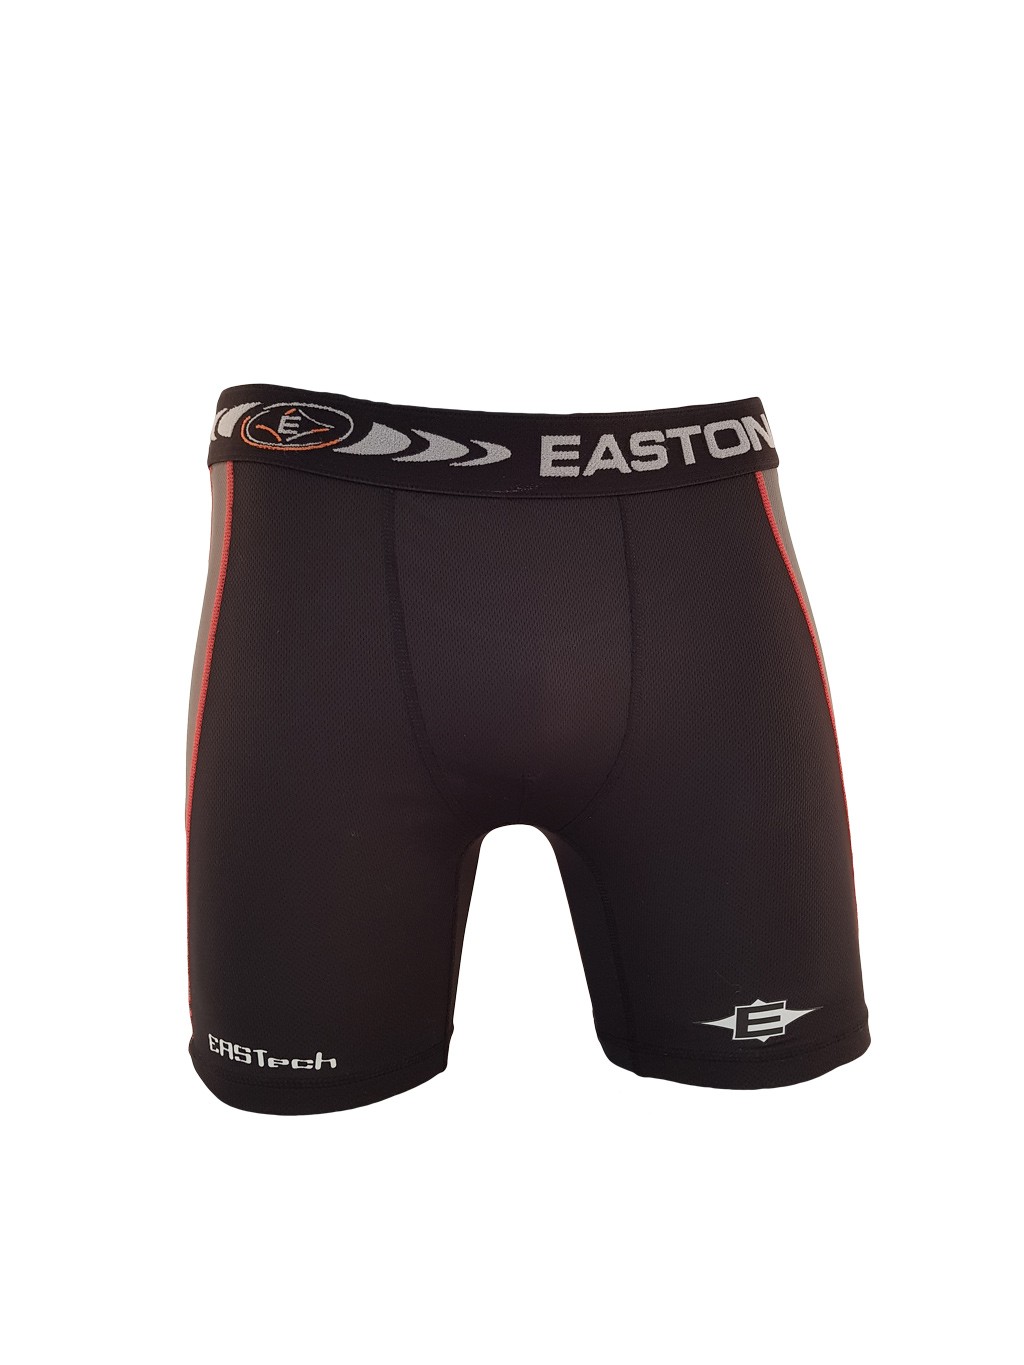 Easton Eastech Compression Junior Underwear Shorts